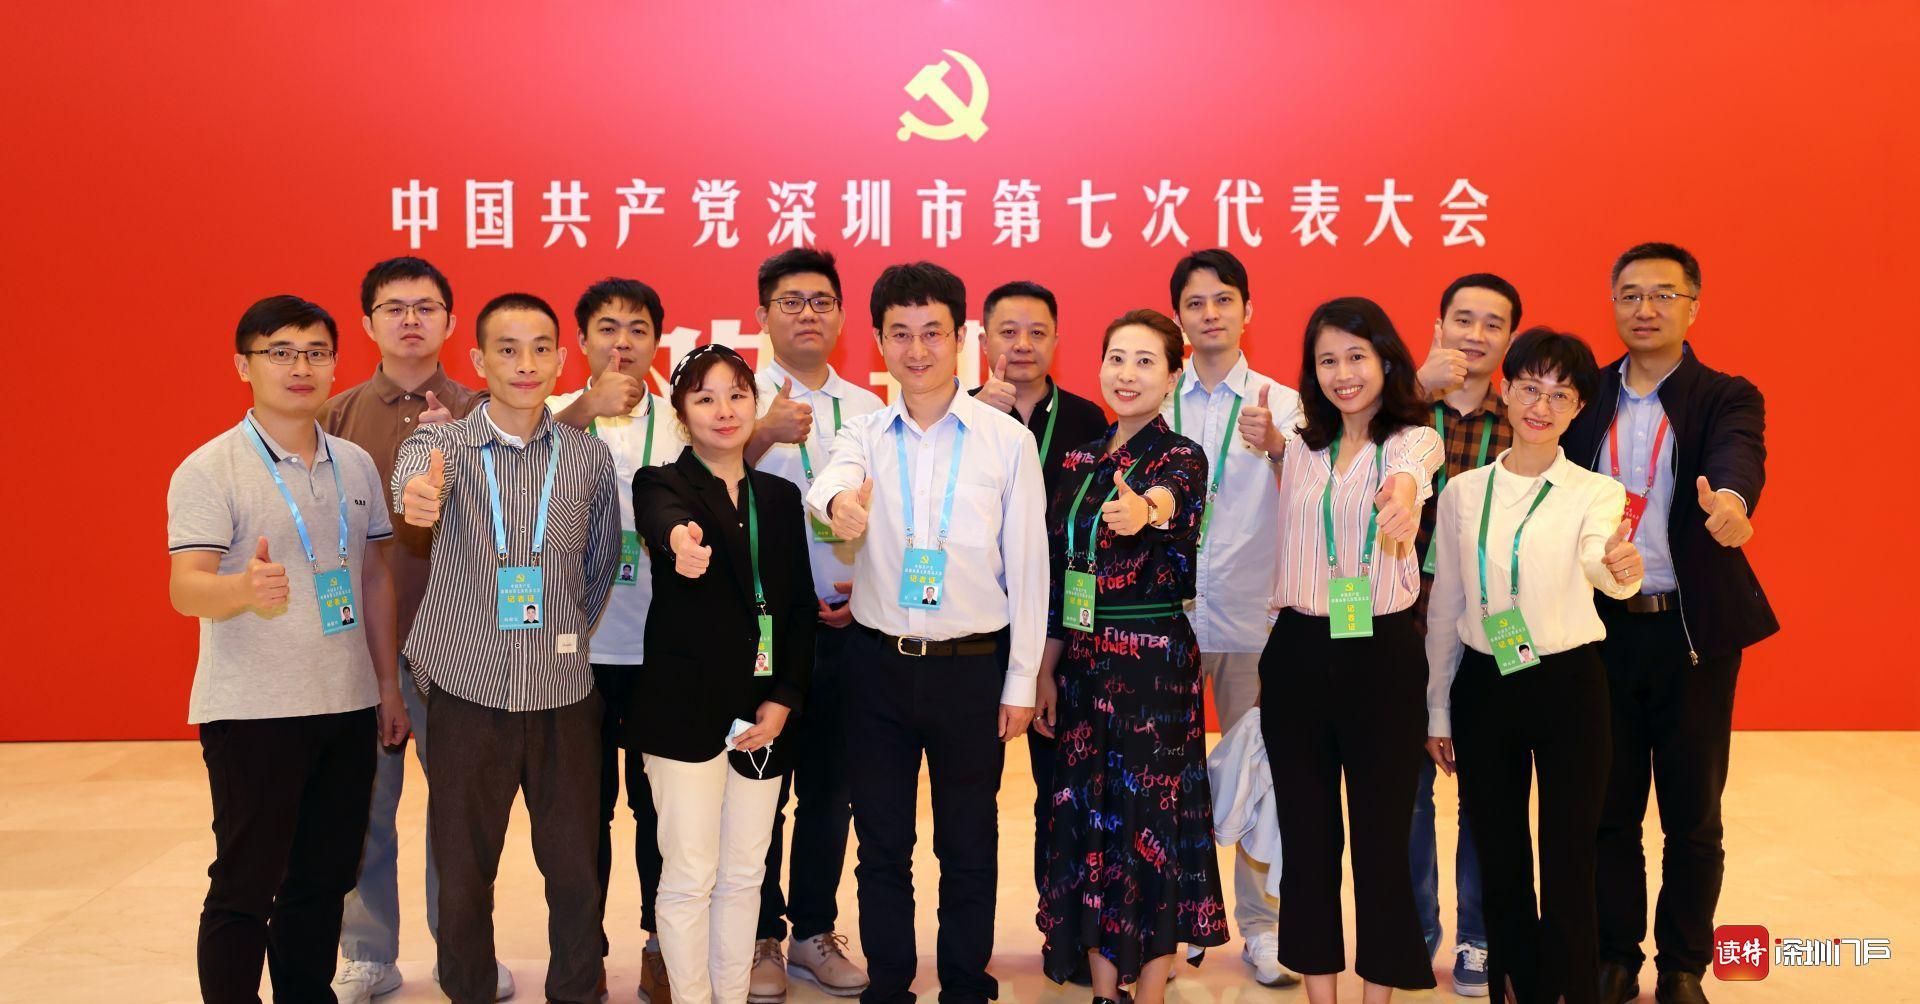 王伟中覃伟中看望深圳市第七次党代会工作人员和媒体记者